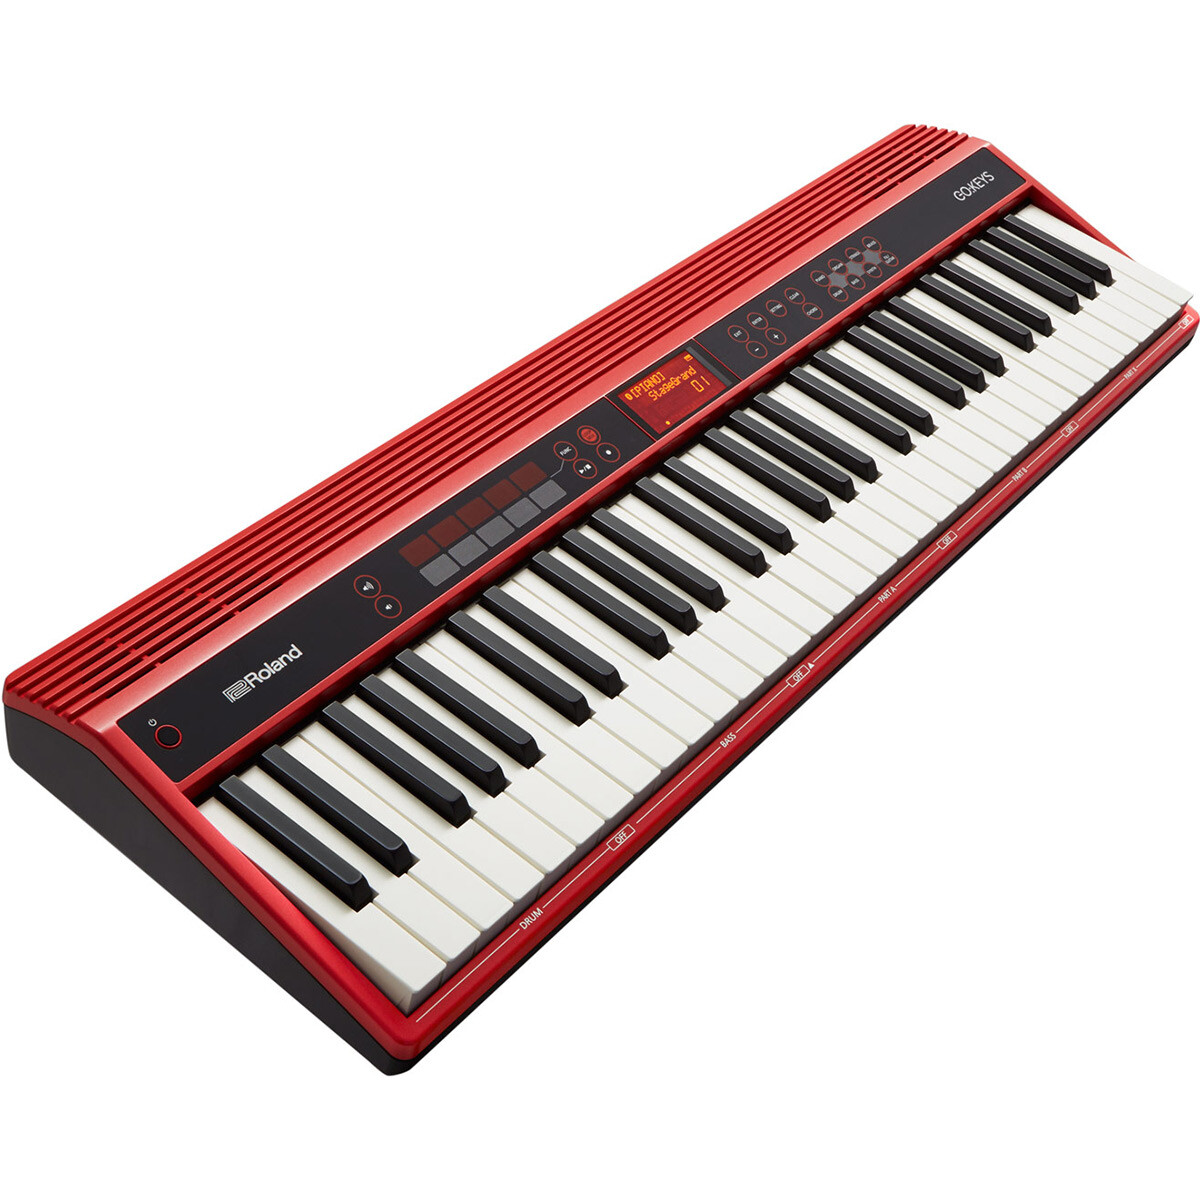 Piano Digital Roland Go-61 Red 